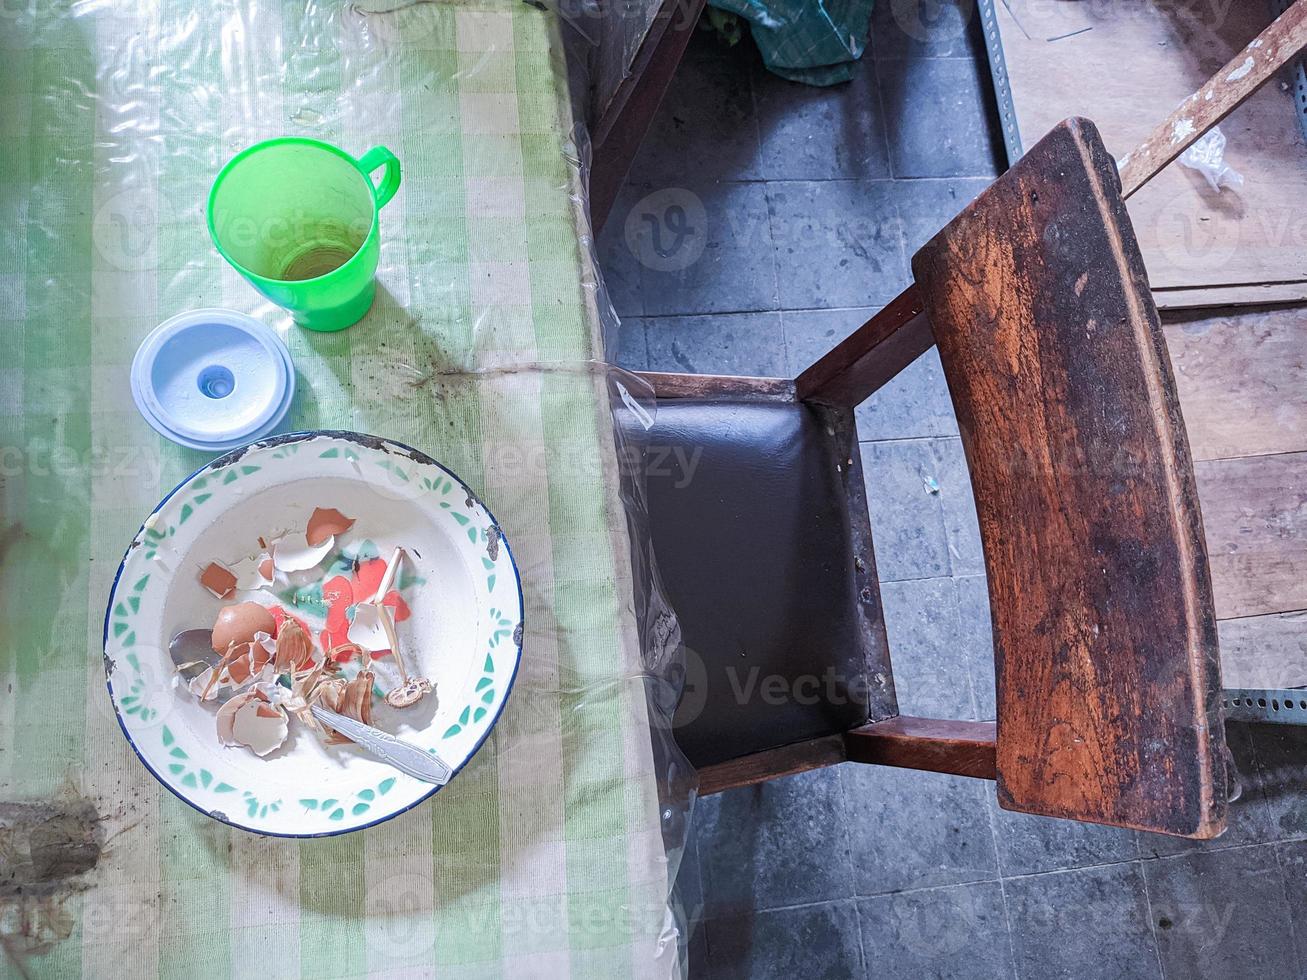 de dining tafel is in een troep. een rommelig dining tafel met gebruikt gerechten en vol van voedsel kladjes dat hebben niet geweest schoongemaakt. echt leven. jaareinde foto